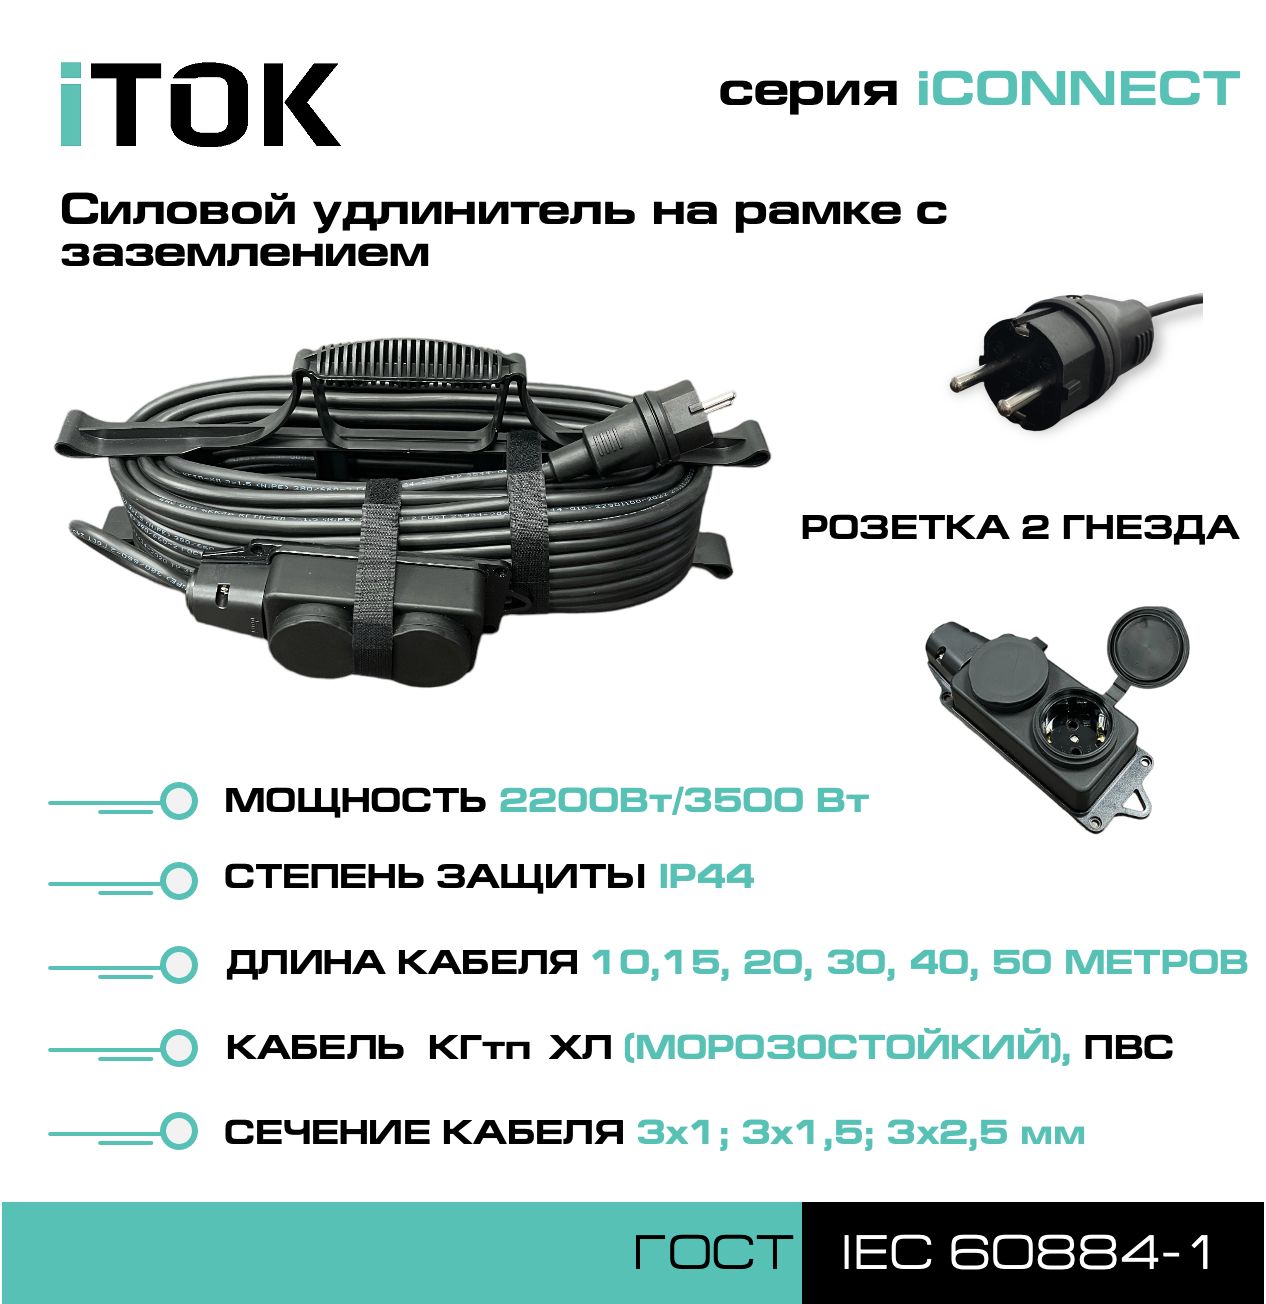 Удлинитель на рамке с заземлением серии iTOK iCONNECT ПВС 3х1 мм 2 гнезда IP44 50 м фигурный пазл в рамке